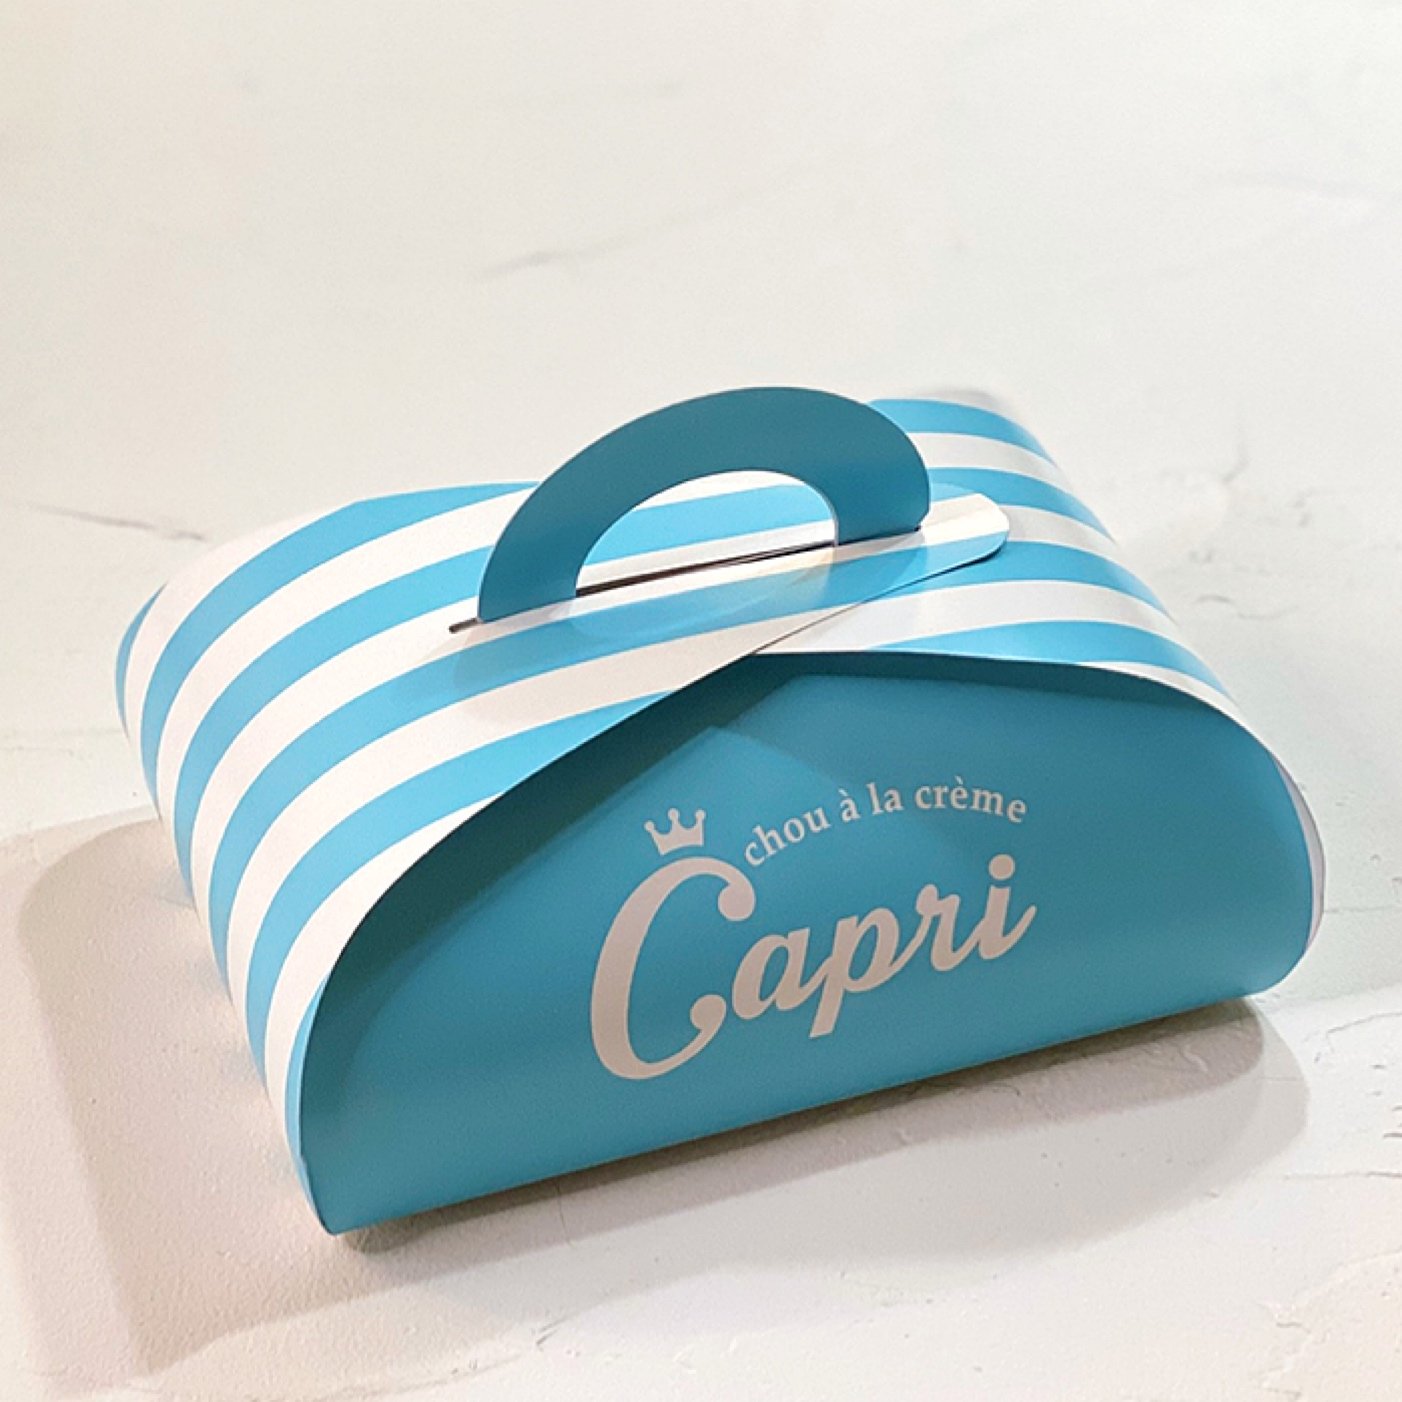 「chou a la creme Capri」